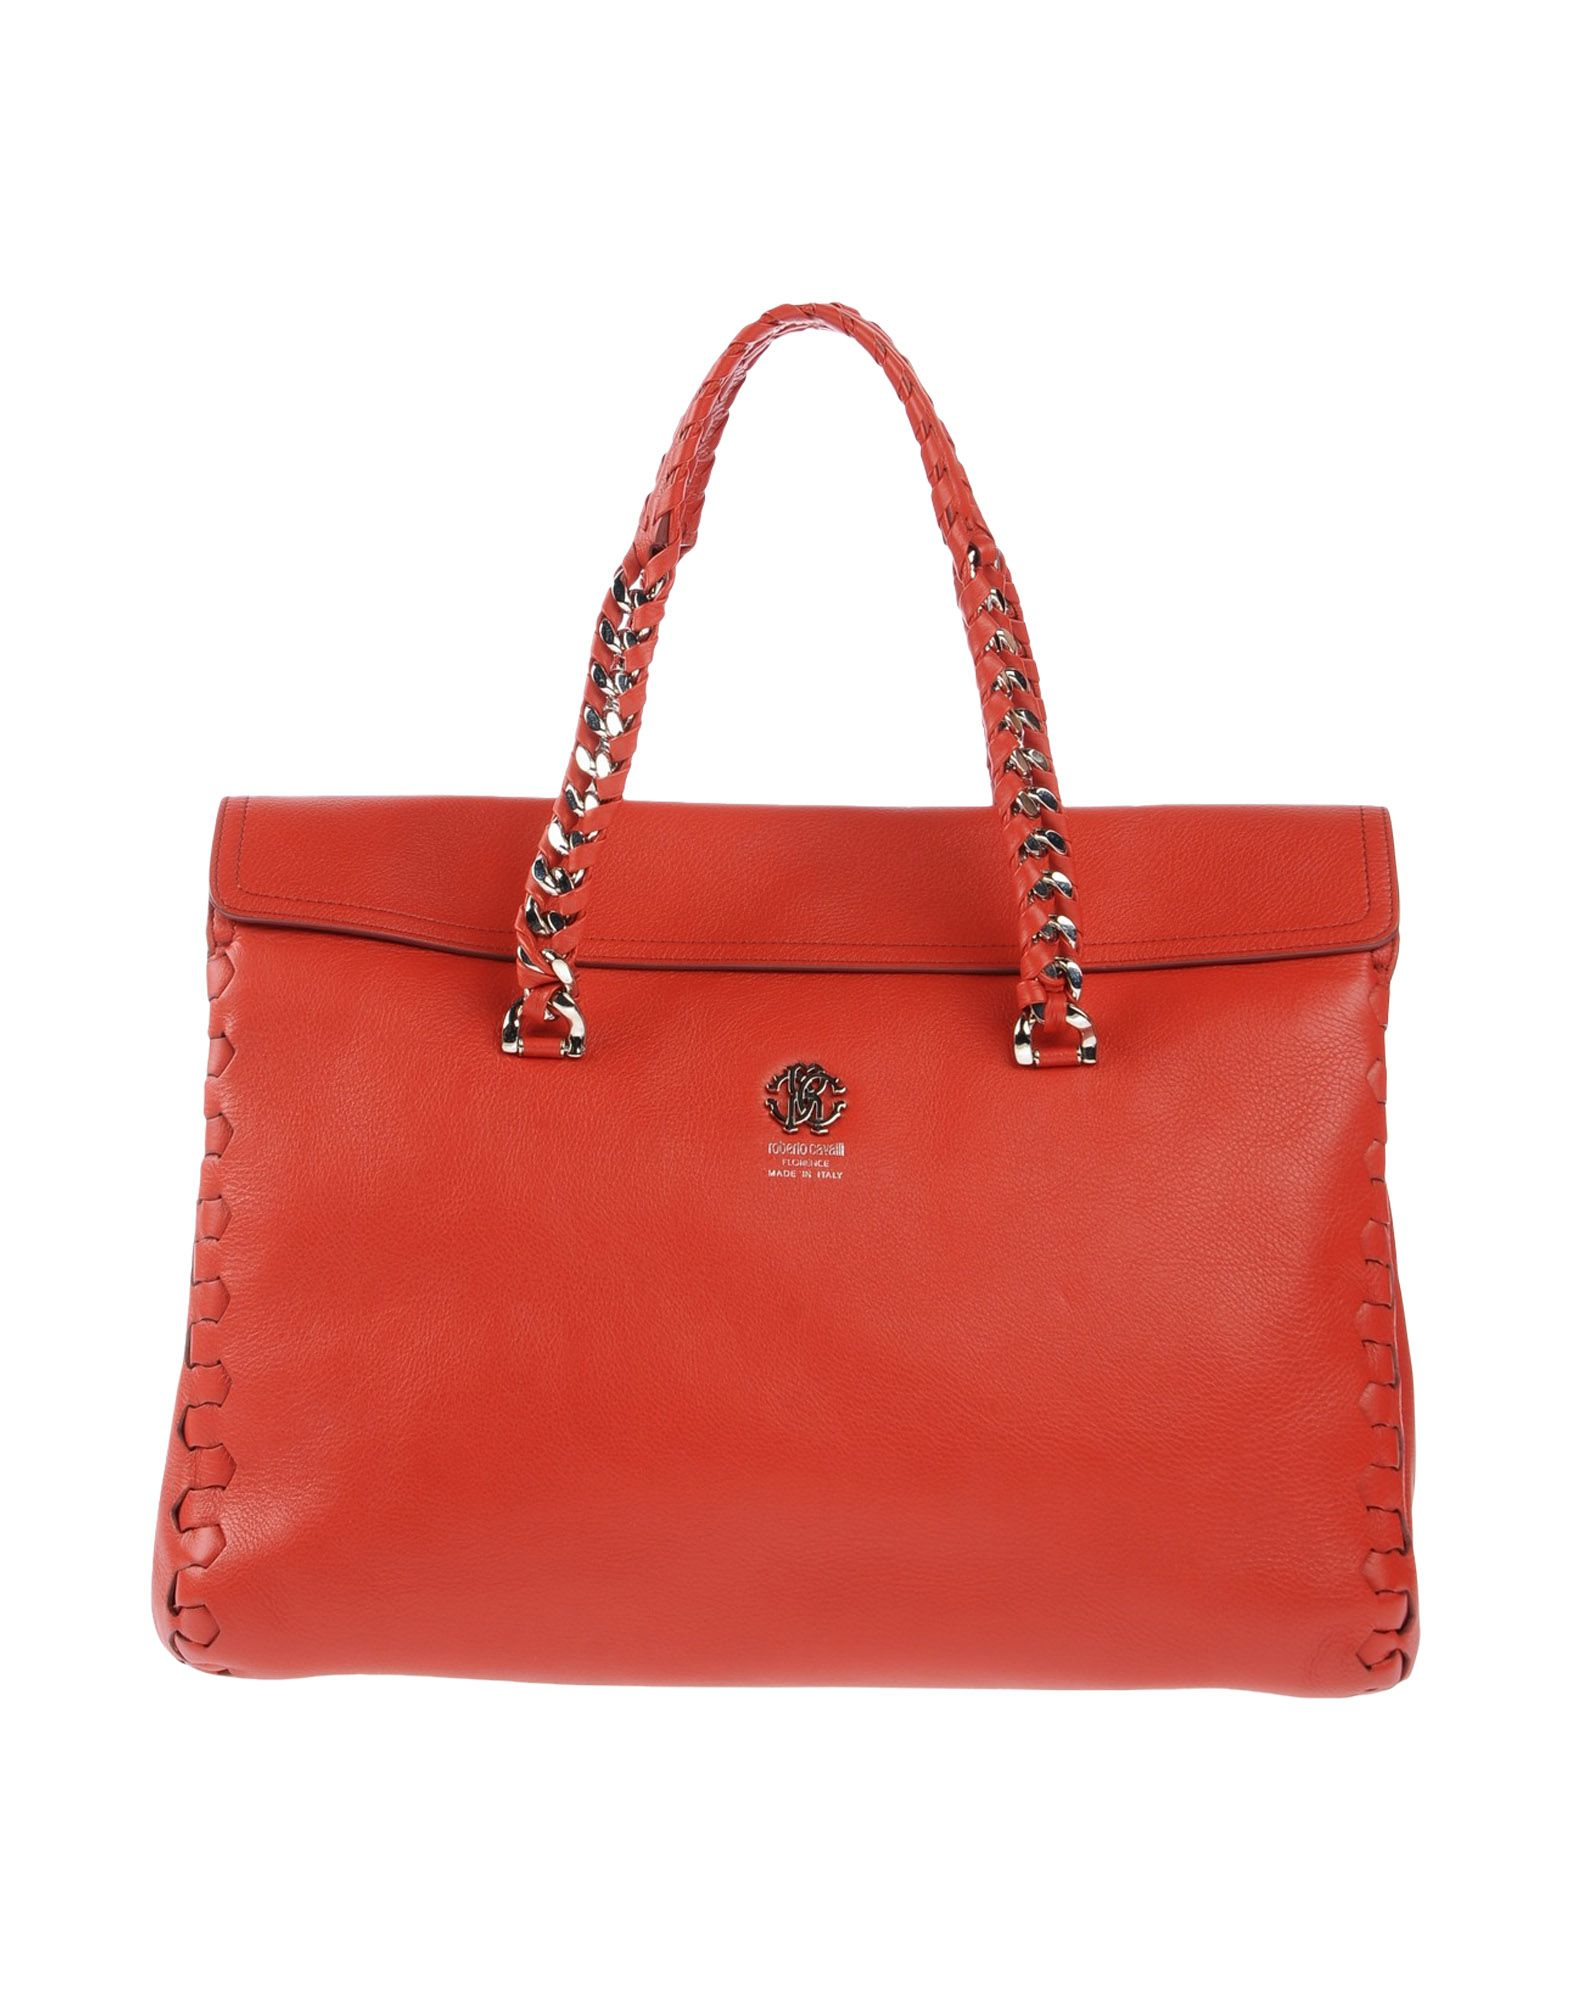 Roberto cavalli Handbag in Red | Lyst